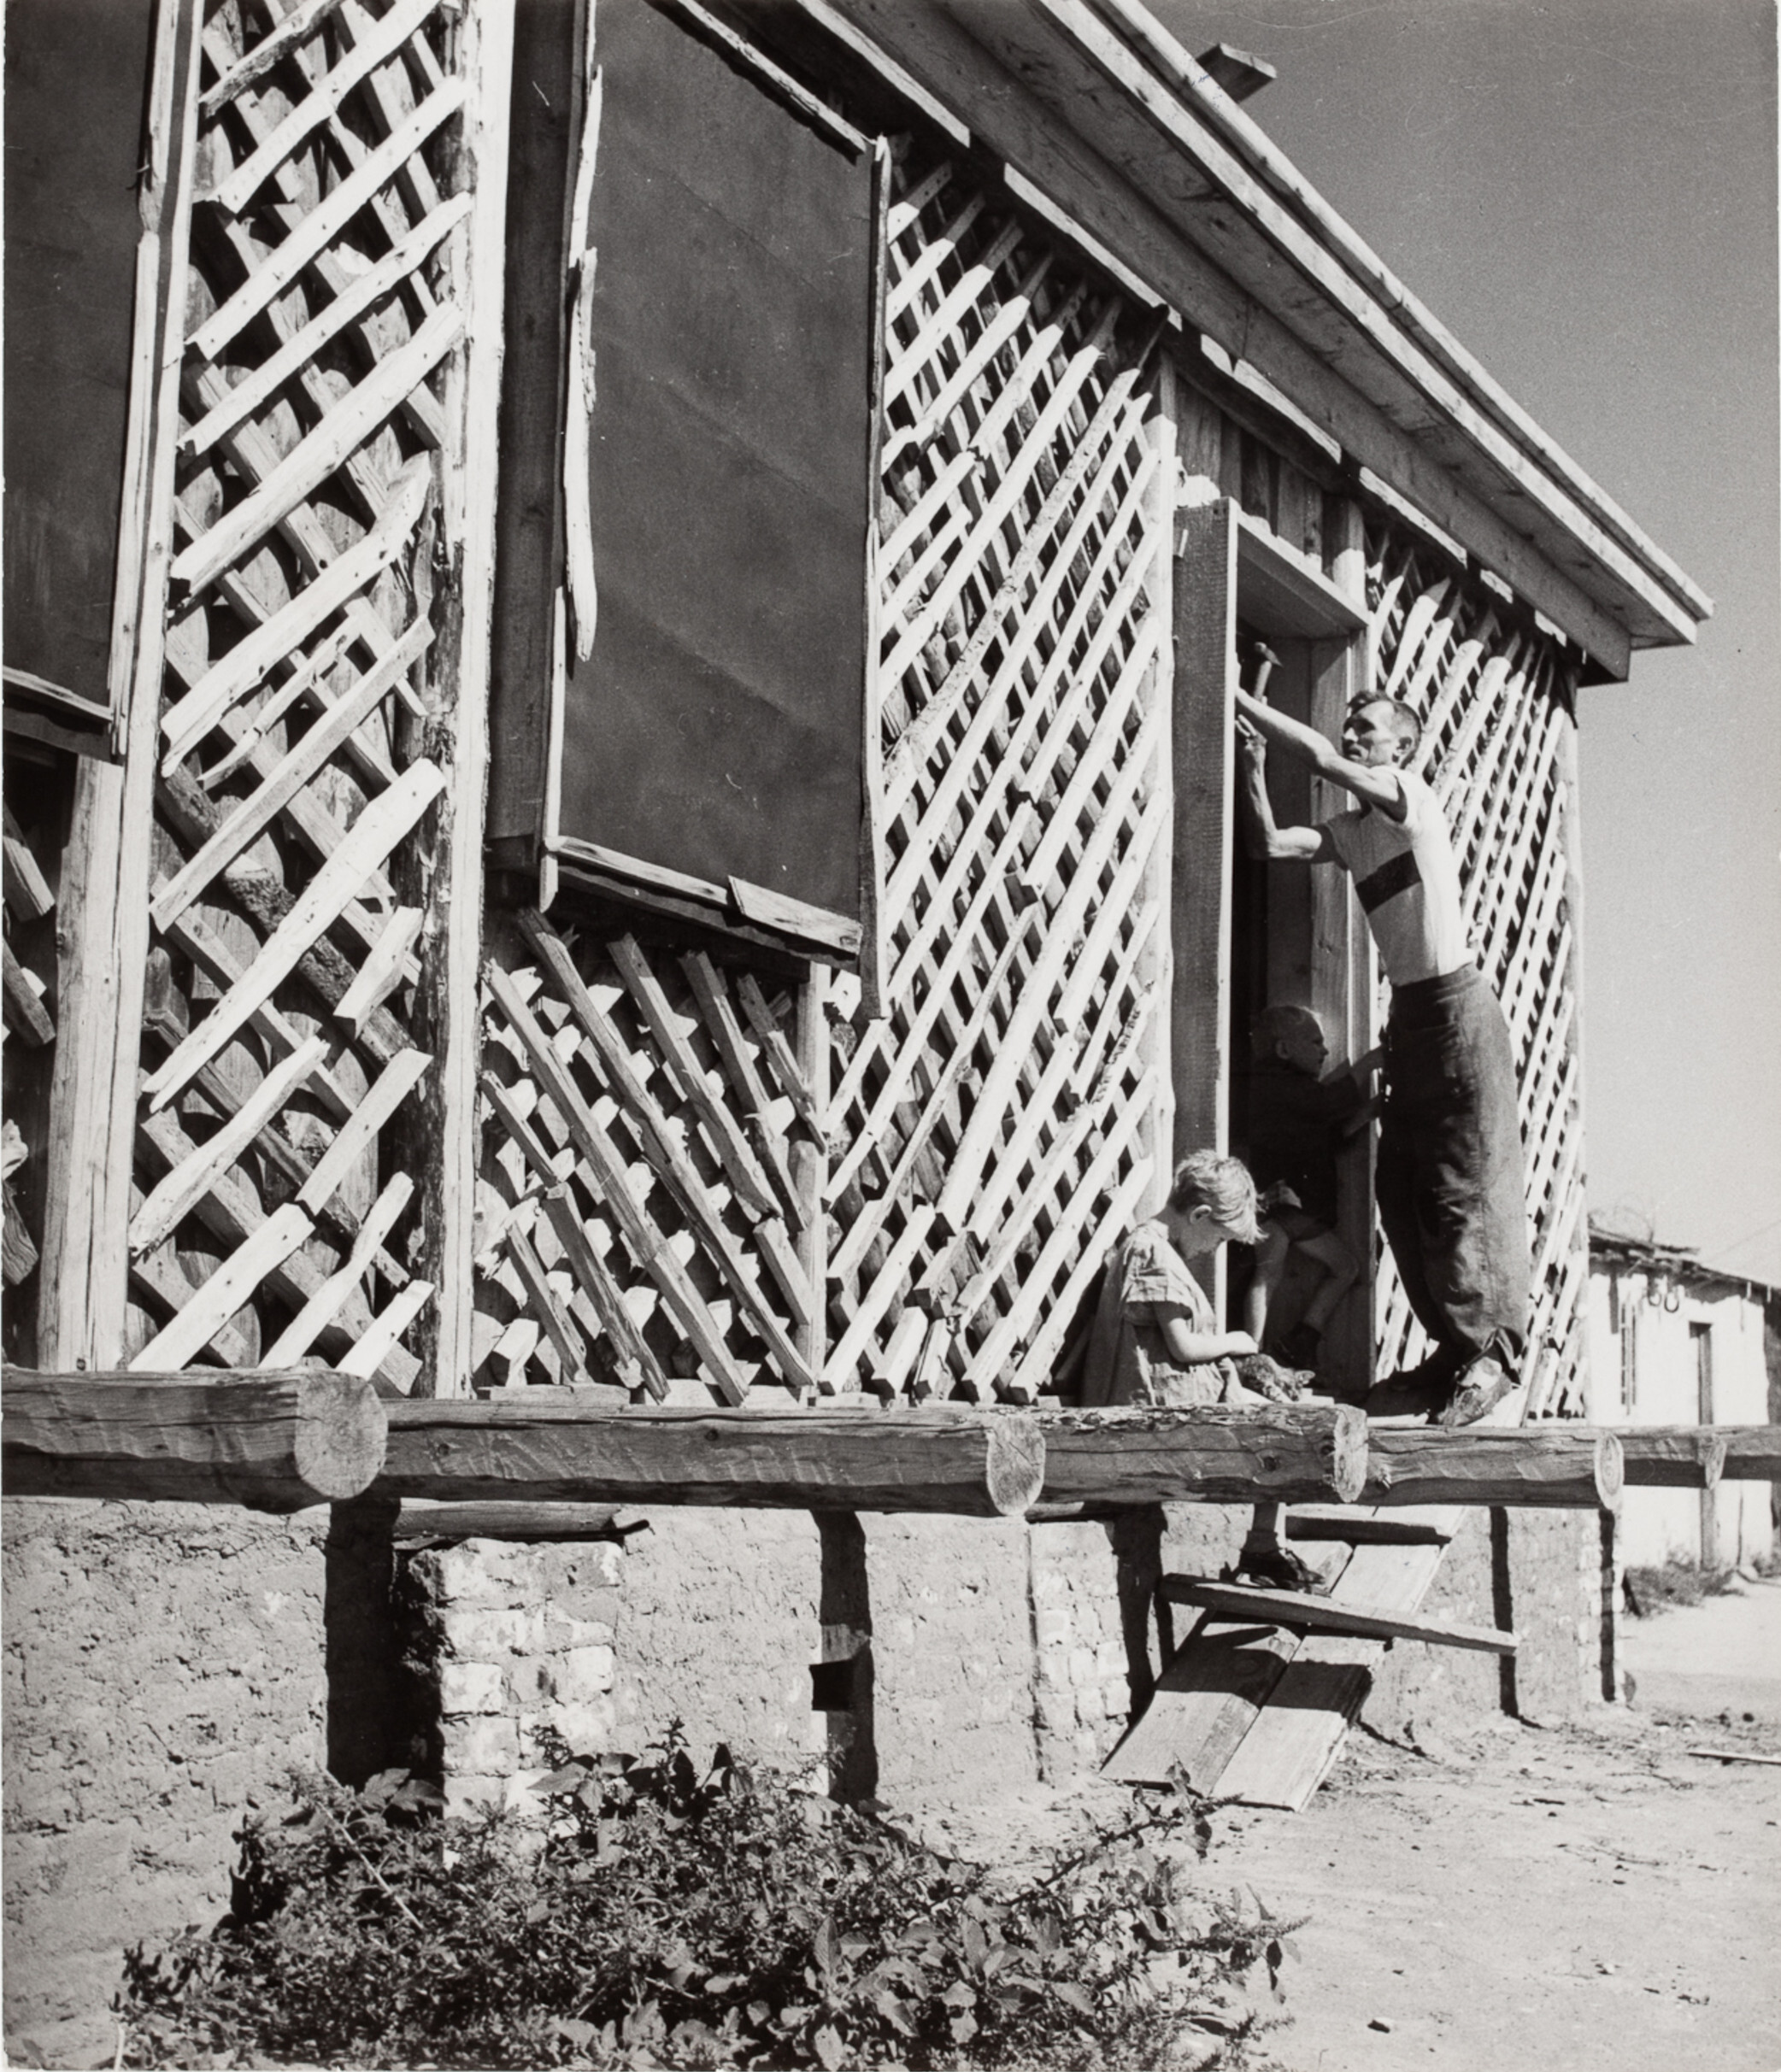 Мужчина строит дверь в новом доме, Сталинград, СССР, 1947 год. Фотограф Роберт Капа